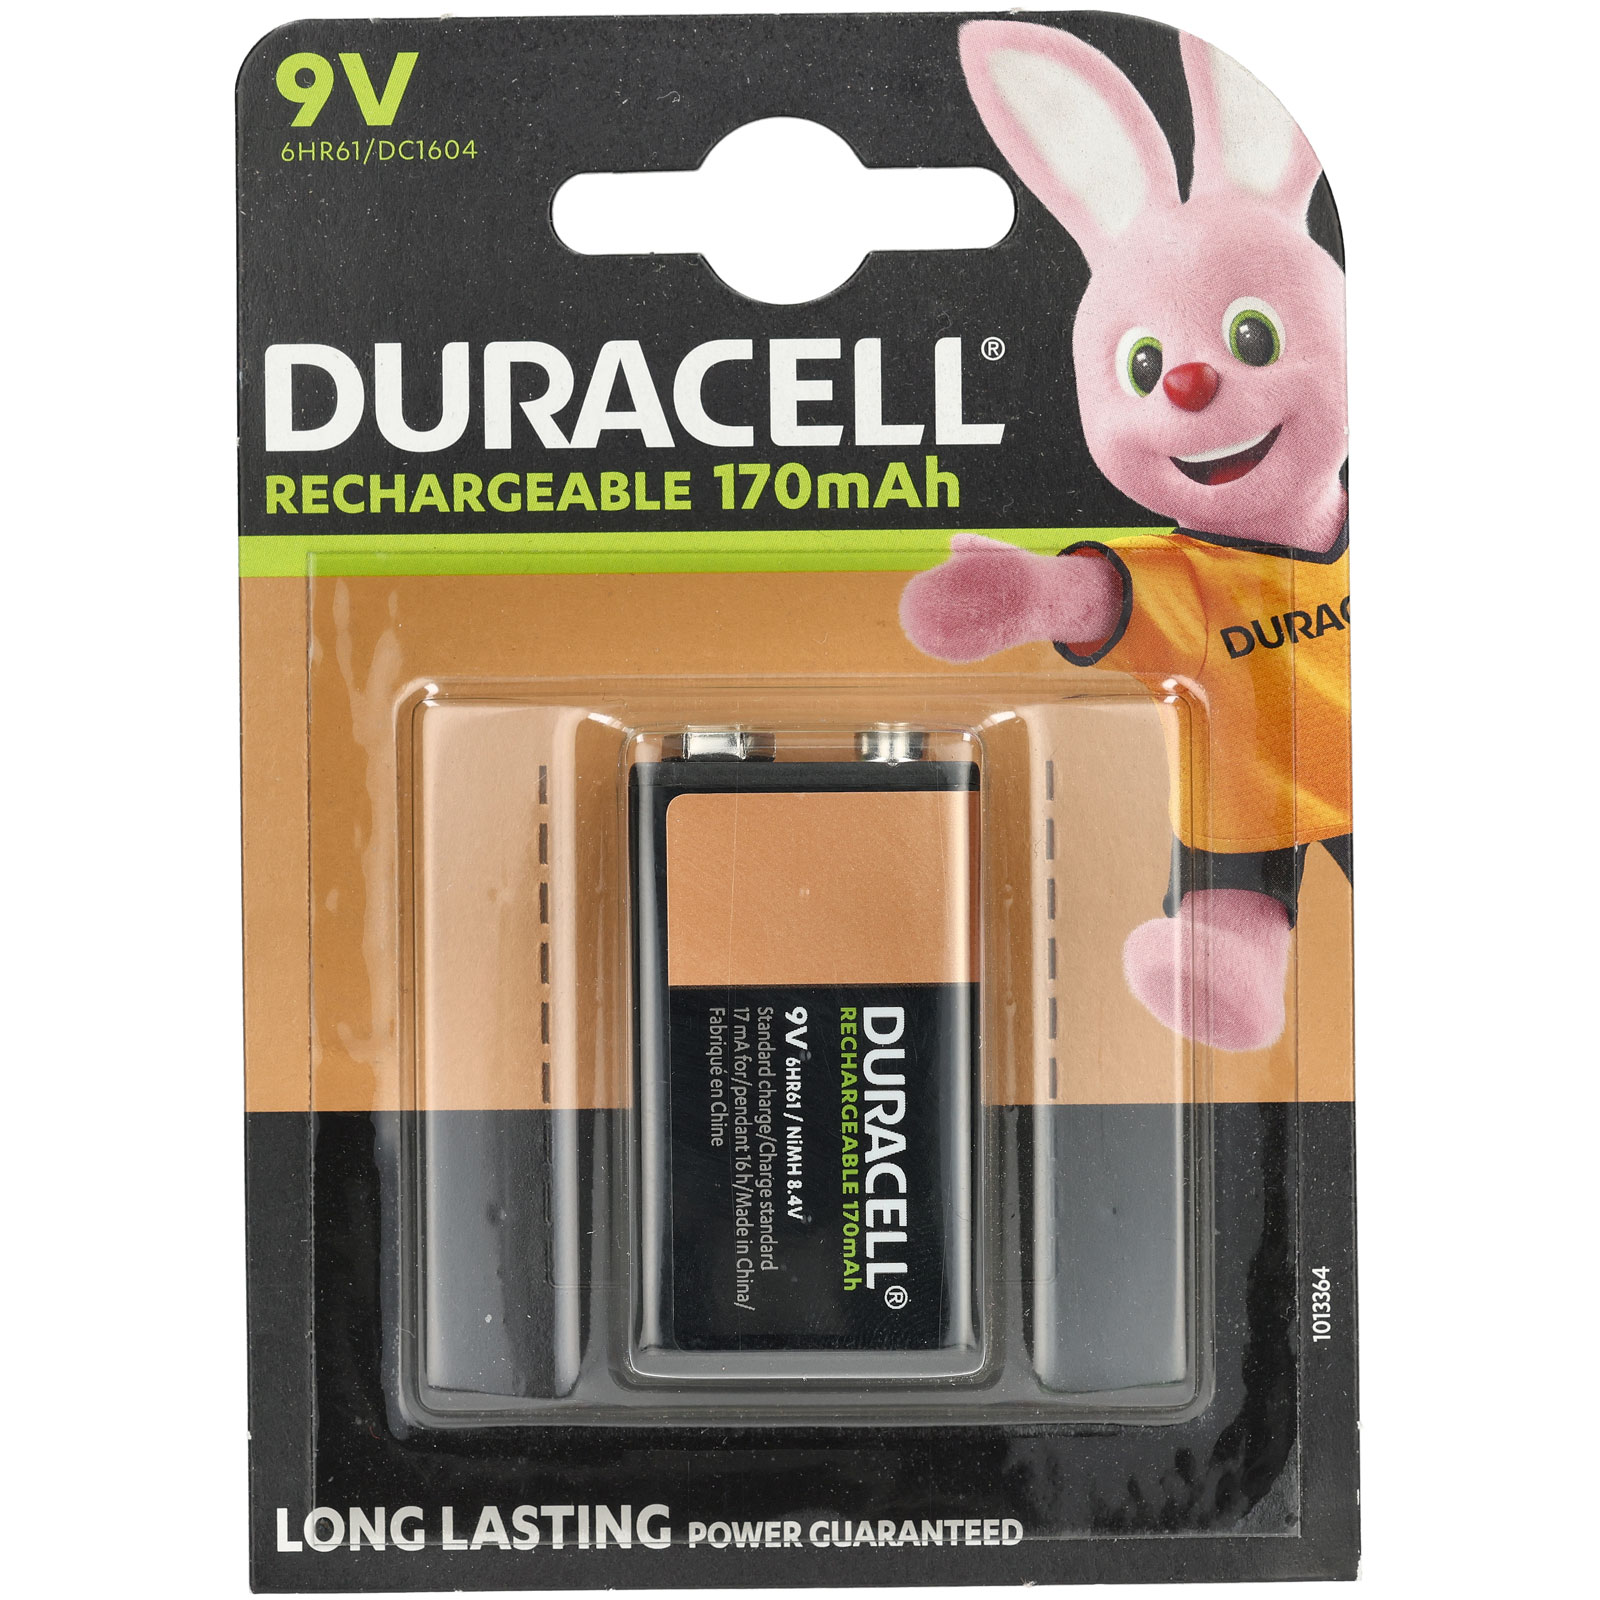 Duracell 5000394056008 STANDARD 9V 1PK Rechargeable Battery 9V PP3 170mAh